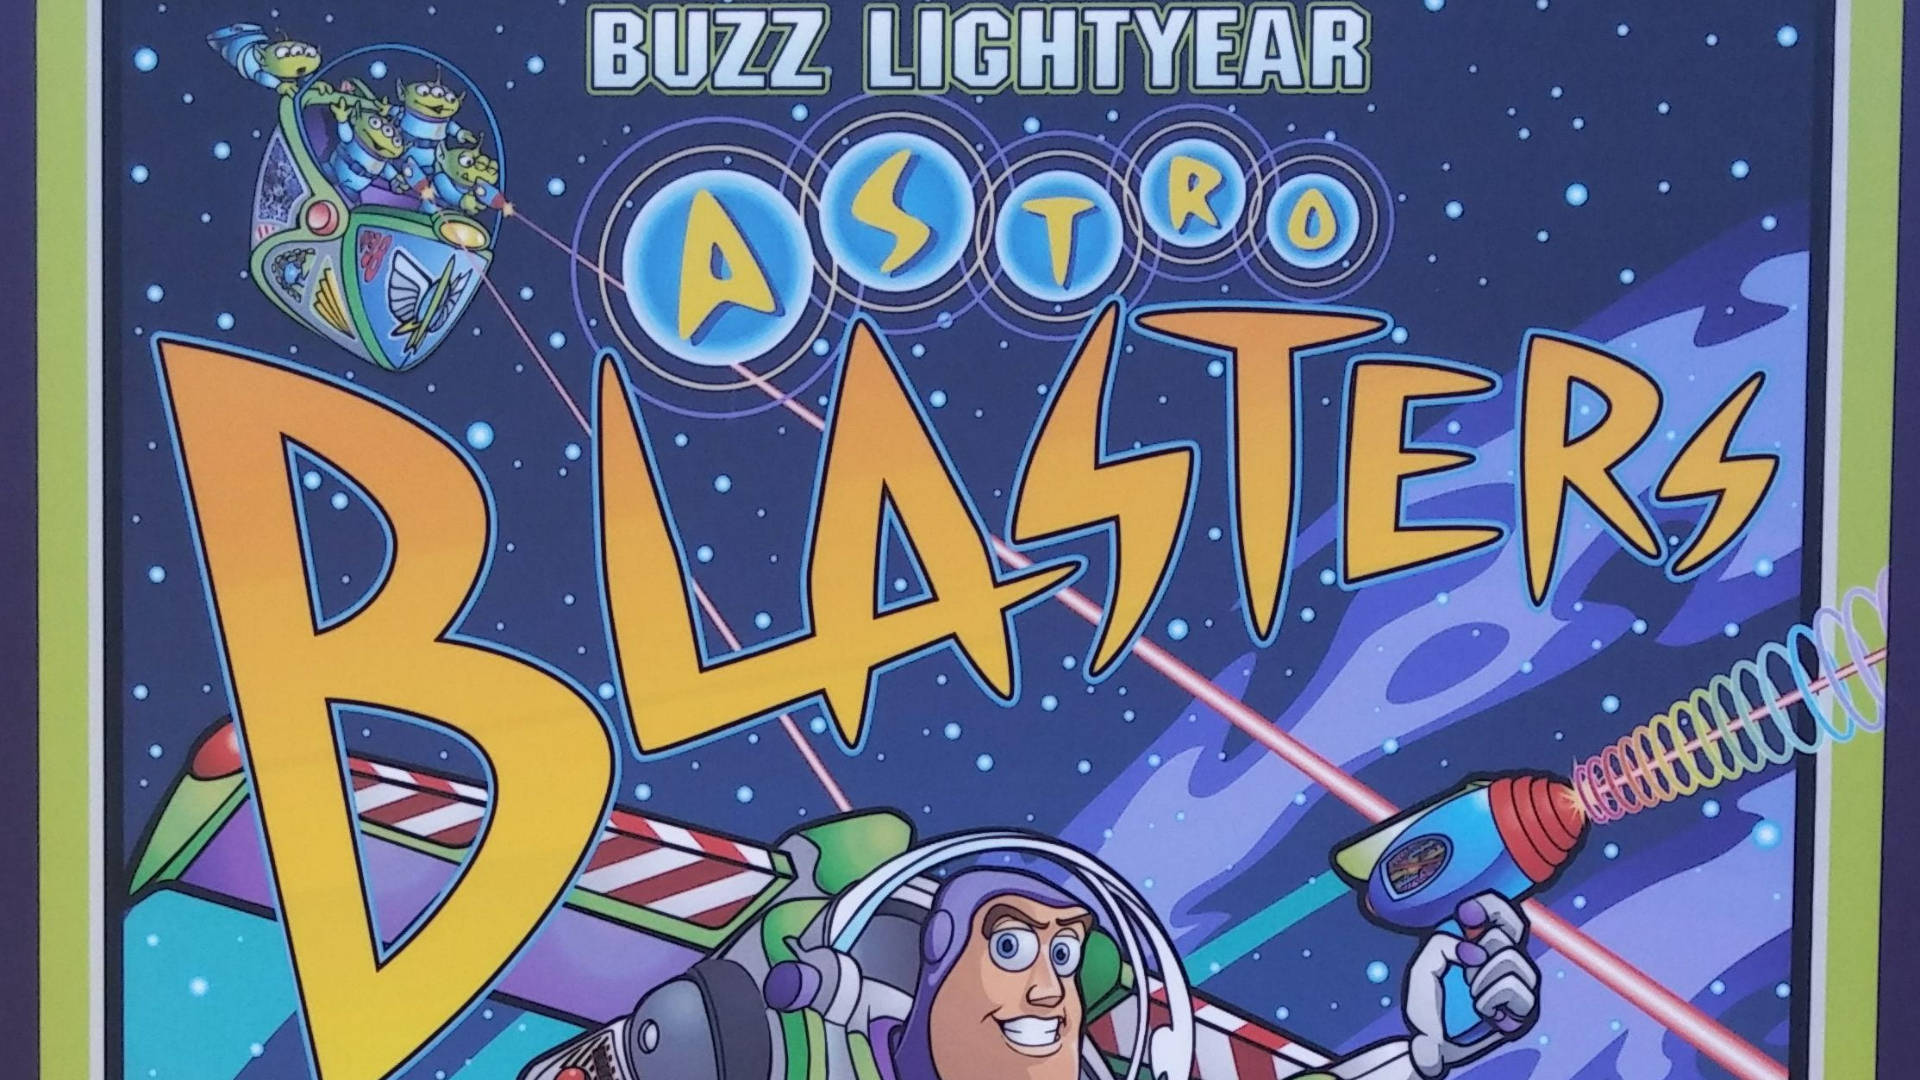 Buzzlightyear Från Star Command Astro Blasters. Wallpaper